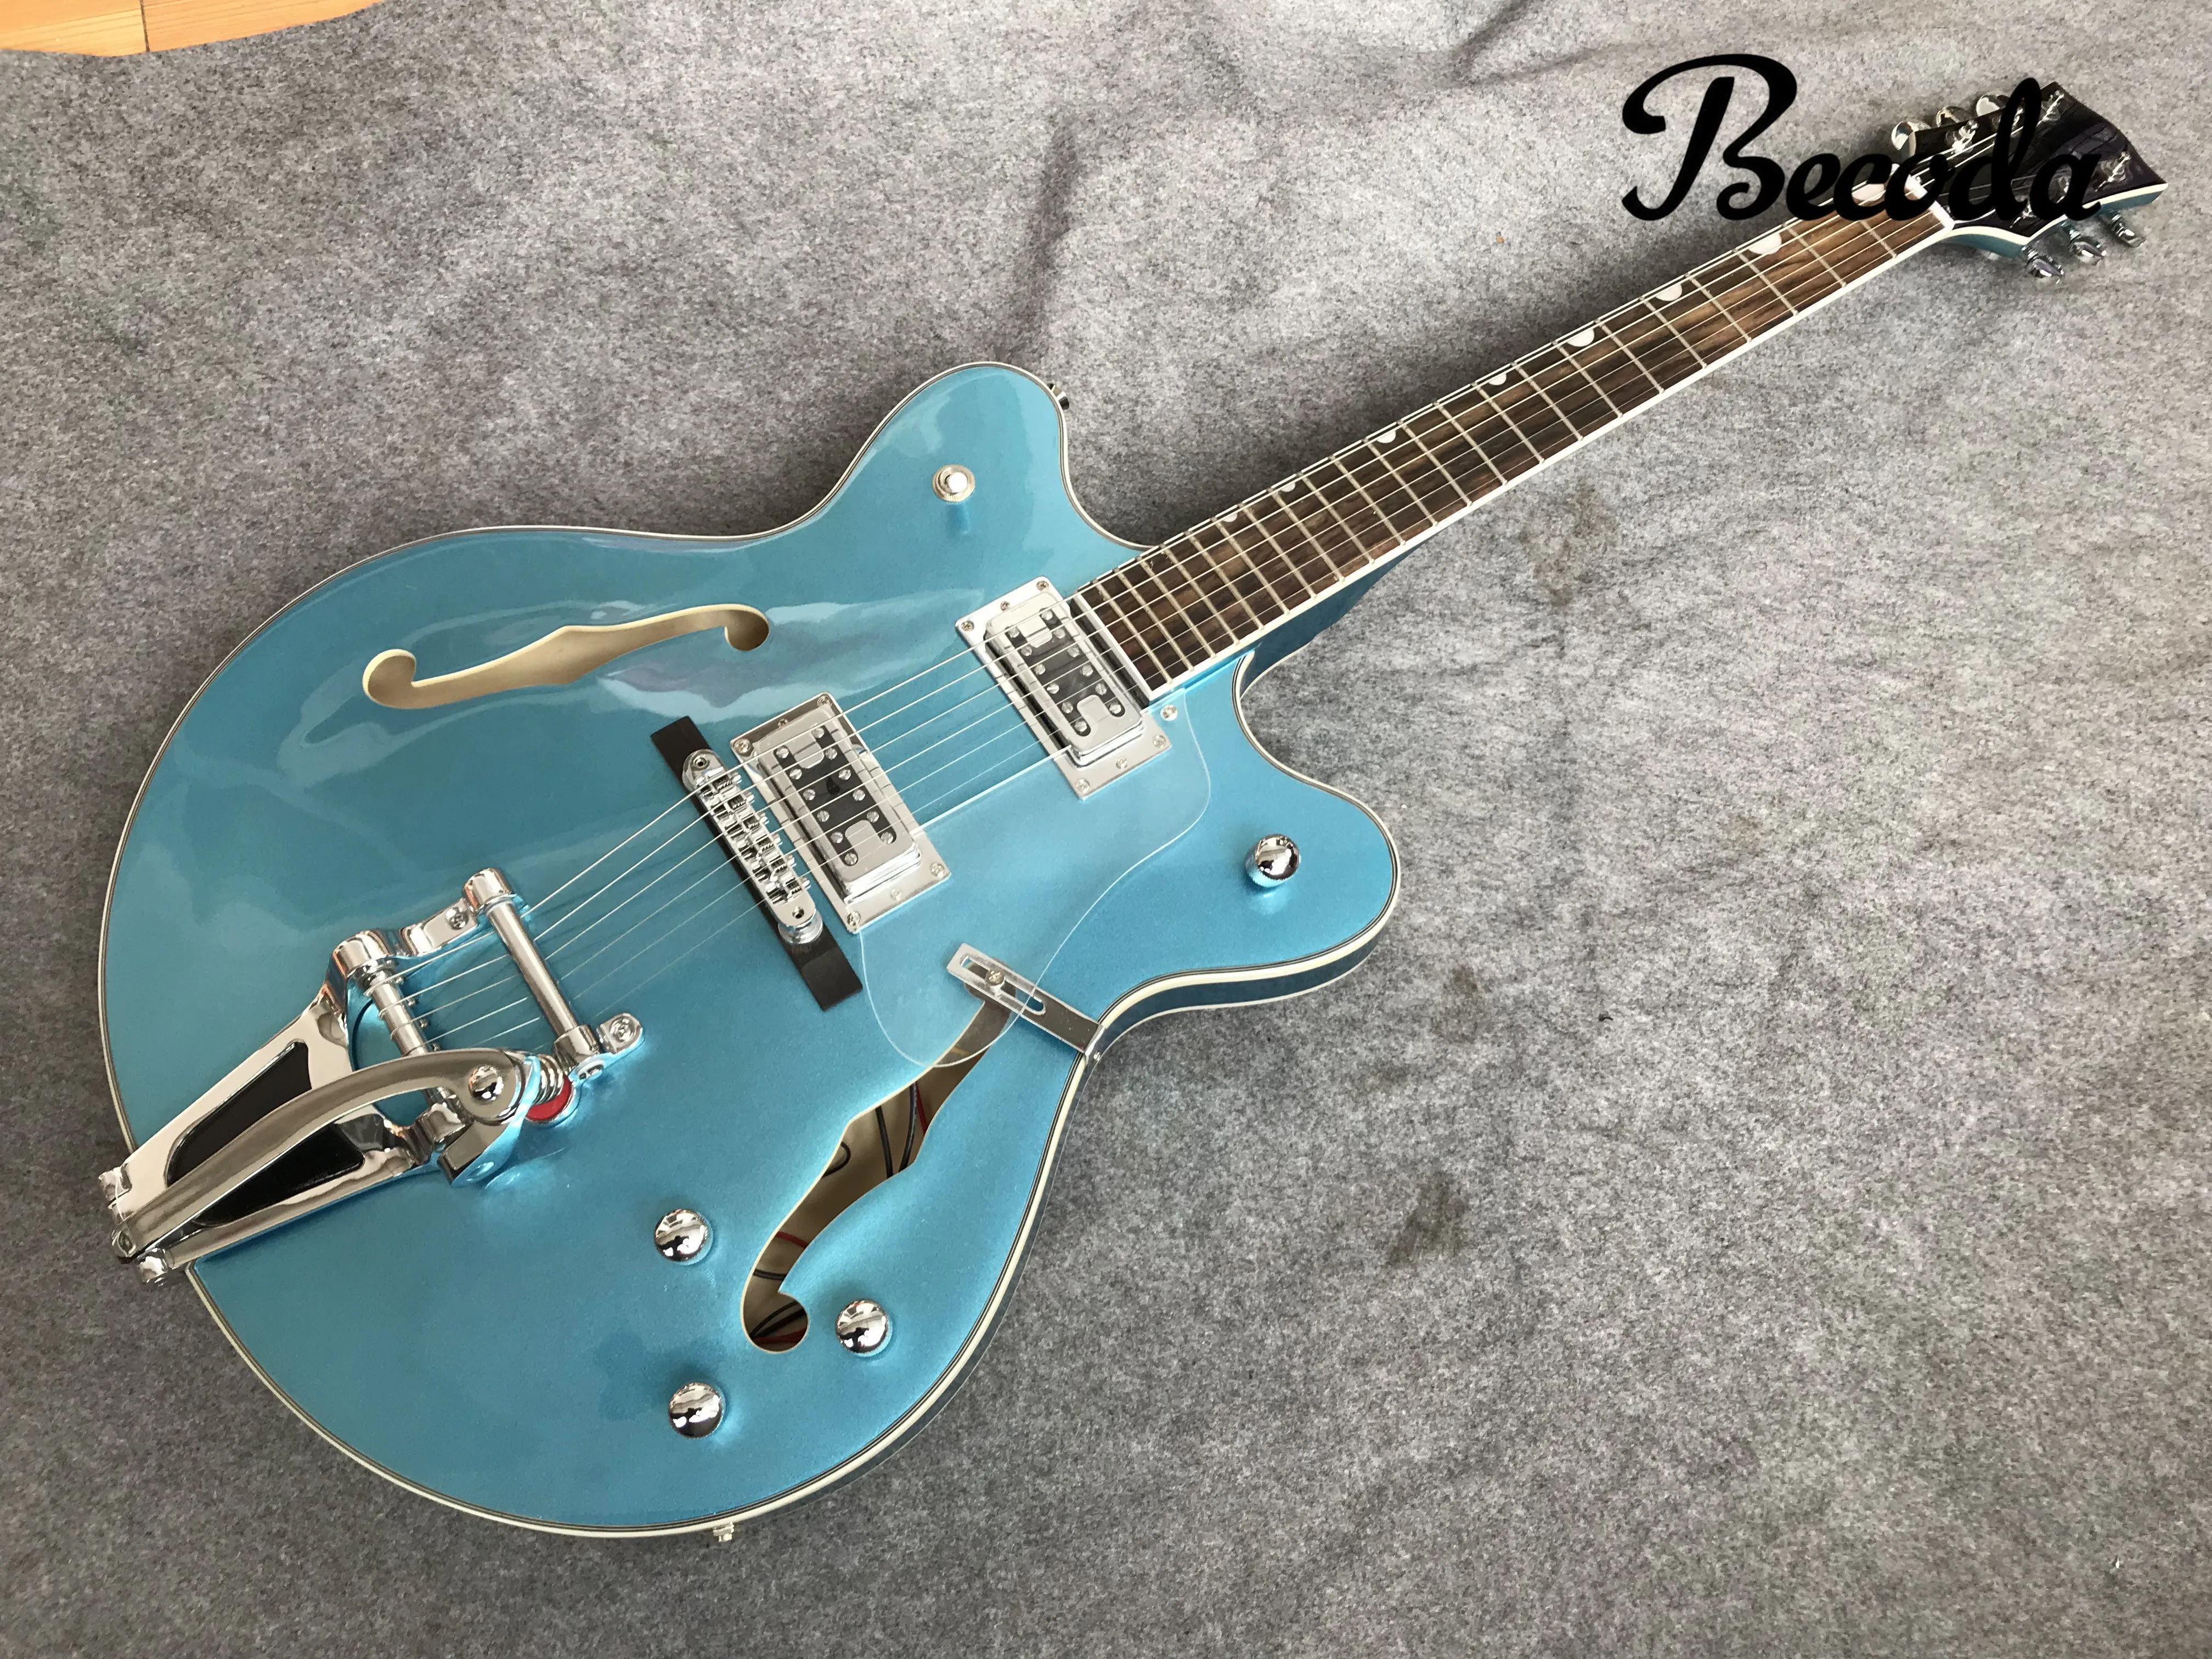 Оригинальная ажурная джазовая гитара металлического синего цвета